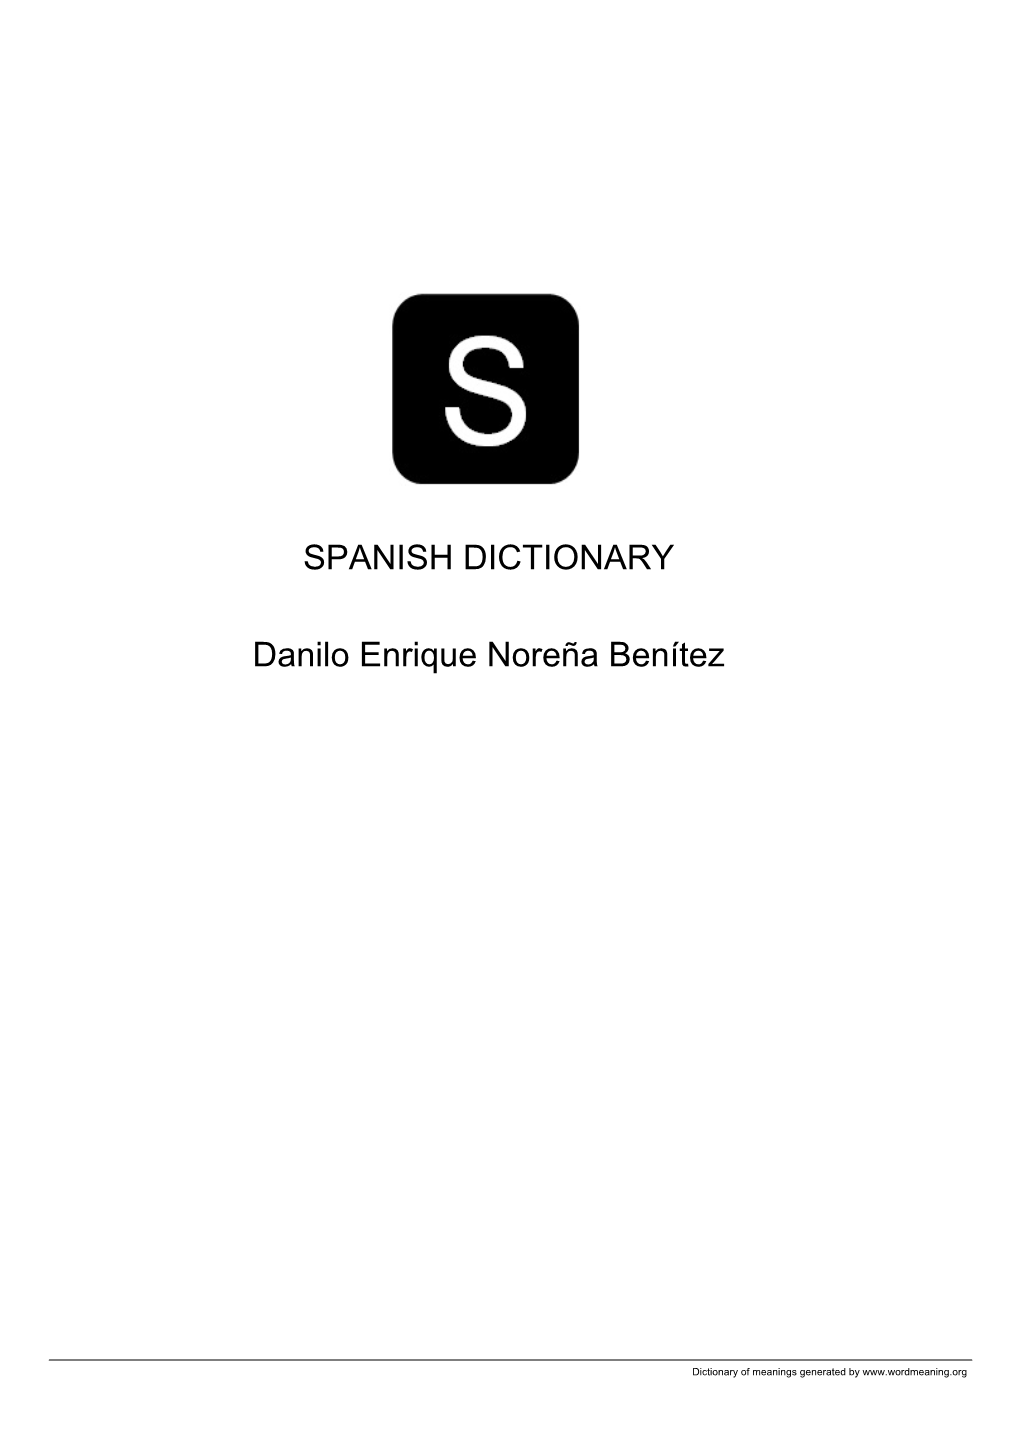 Spanish Open Dictionary by Danilo Enrique Noreña Benítez VOL14